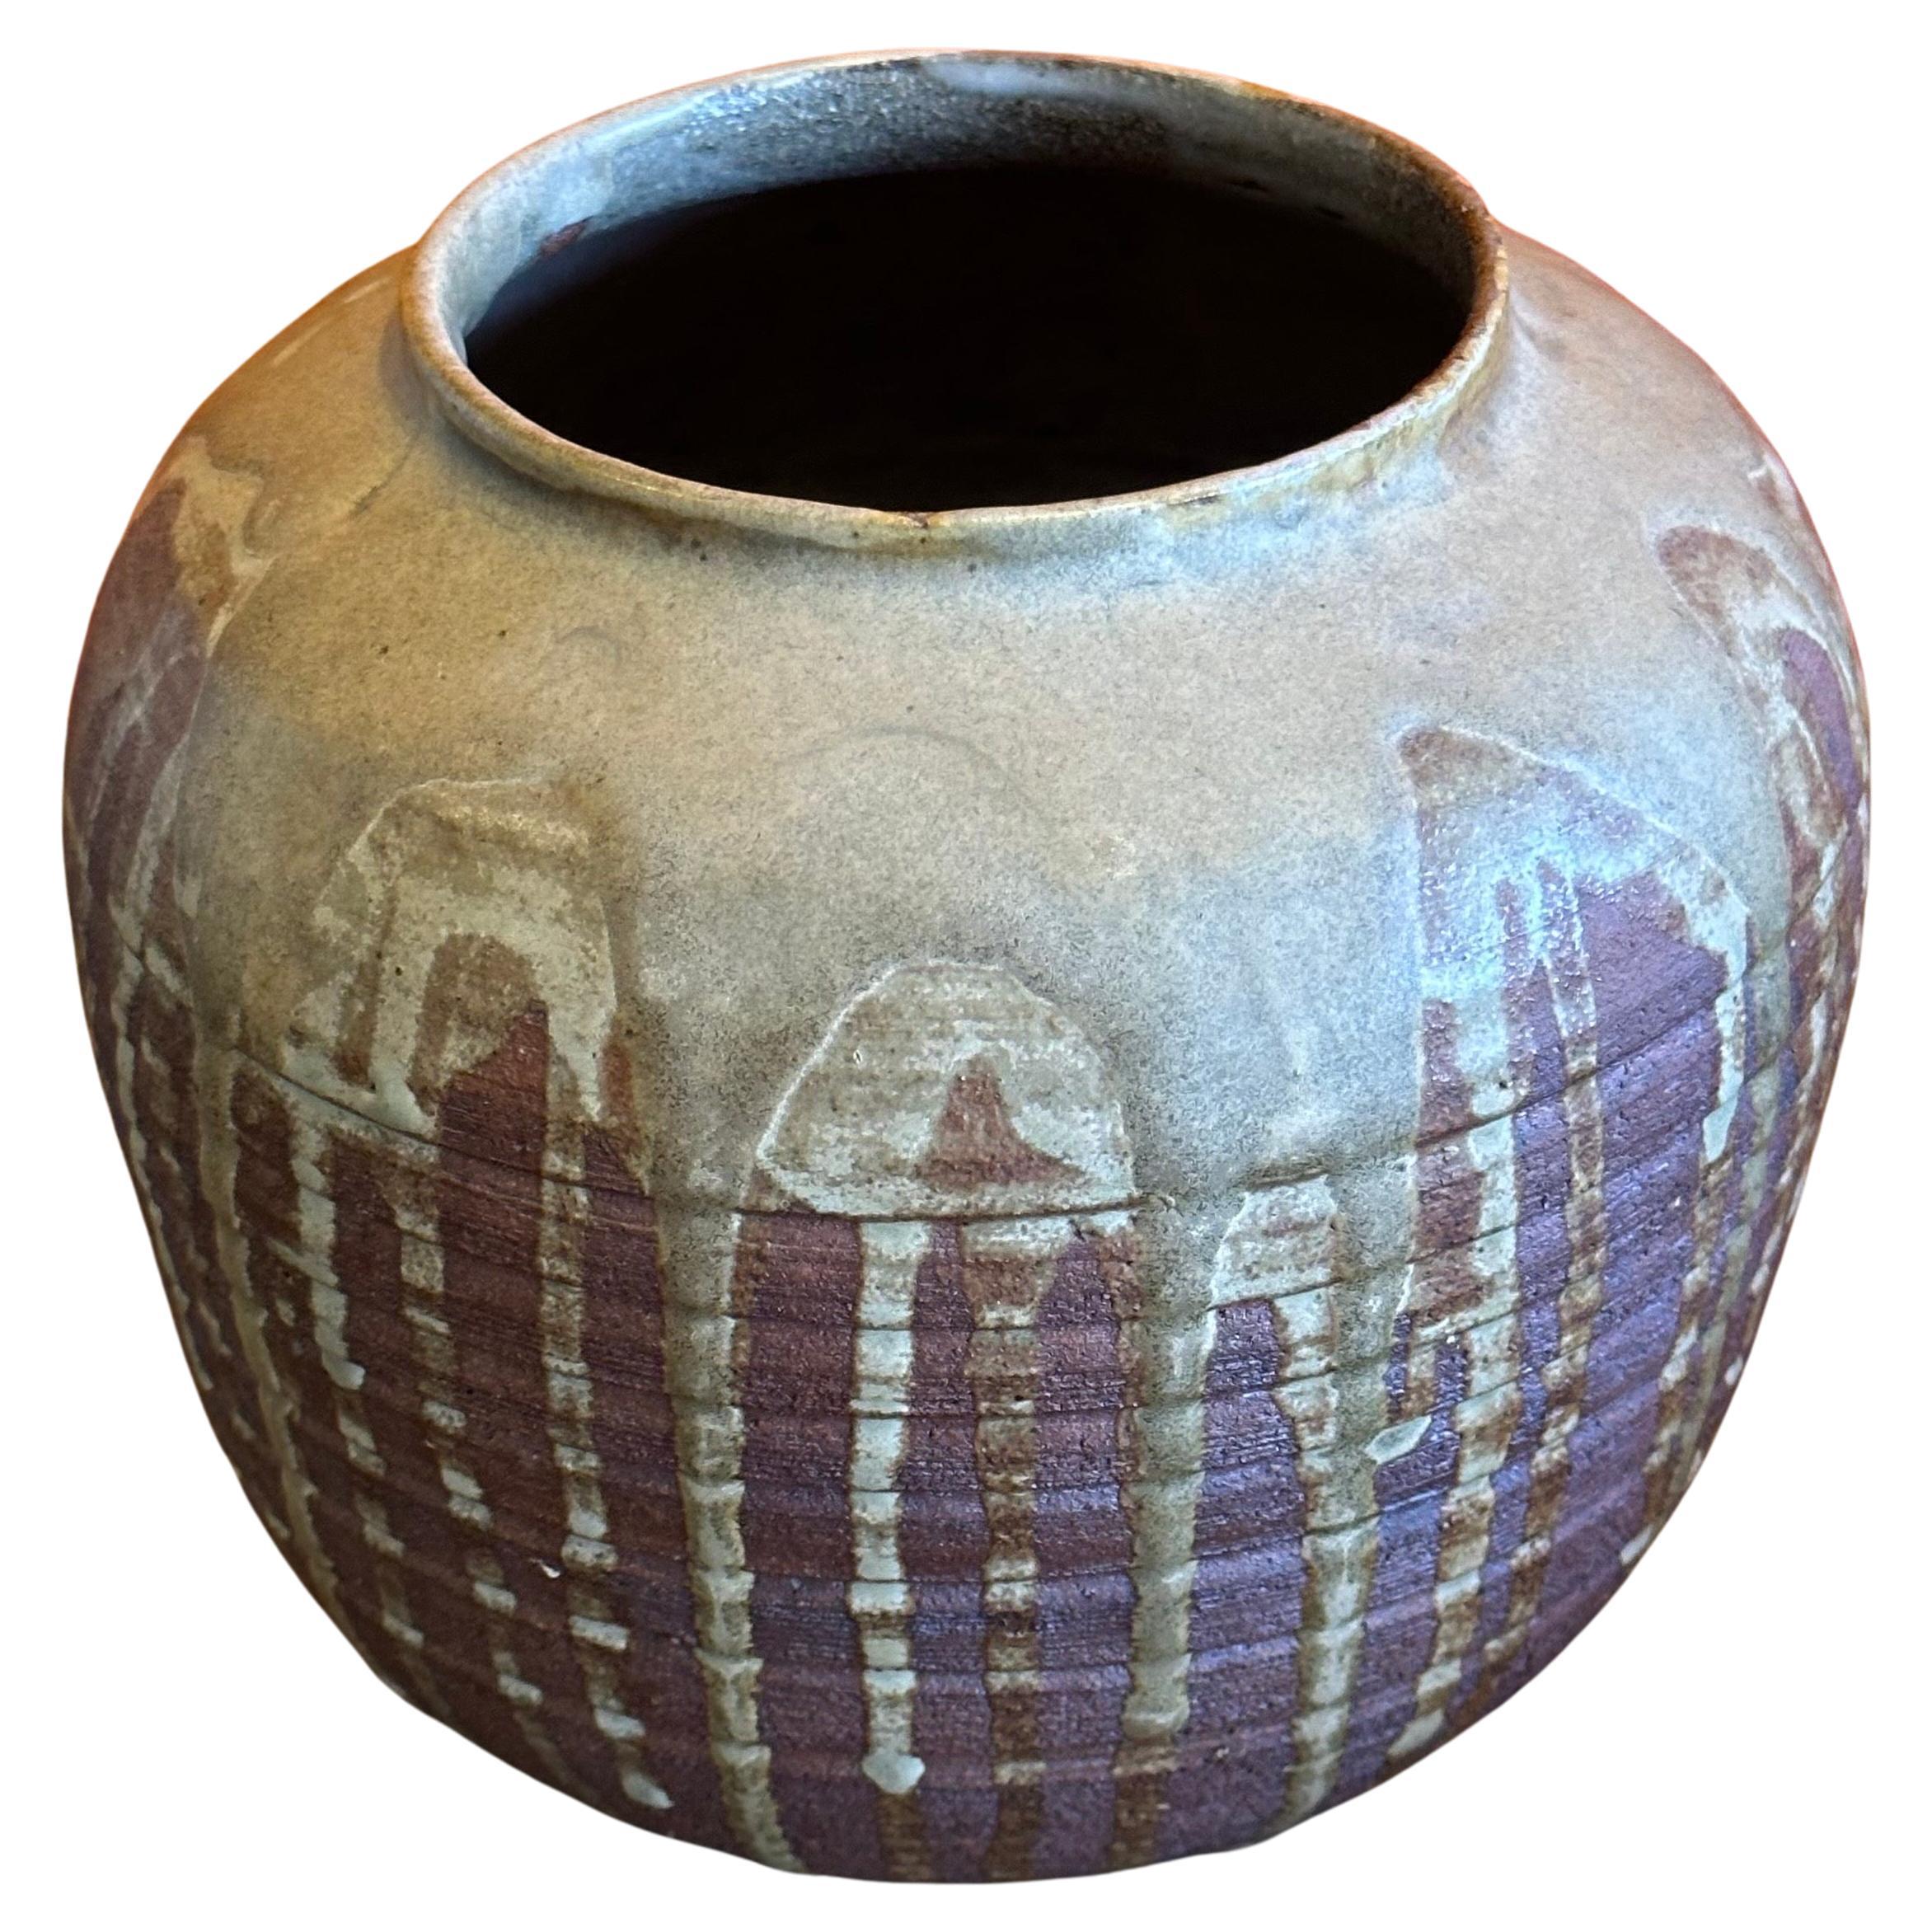 Eine schöne MCM Tropfglasur Studio Keramik Steingut Vase von Del Soto, ca. 1971.  Das Stück ist in sehr gutem Vintage-Zustand ohne Chips oder Risse und misst 7,5 